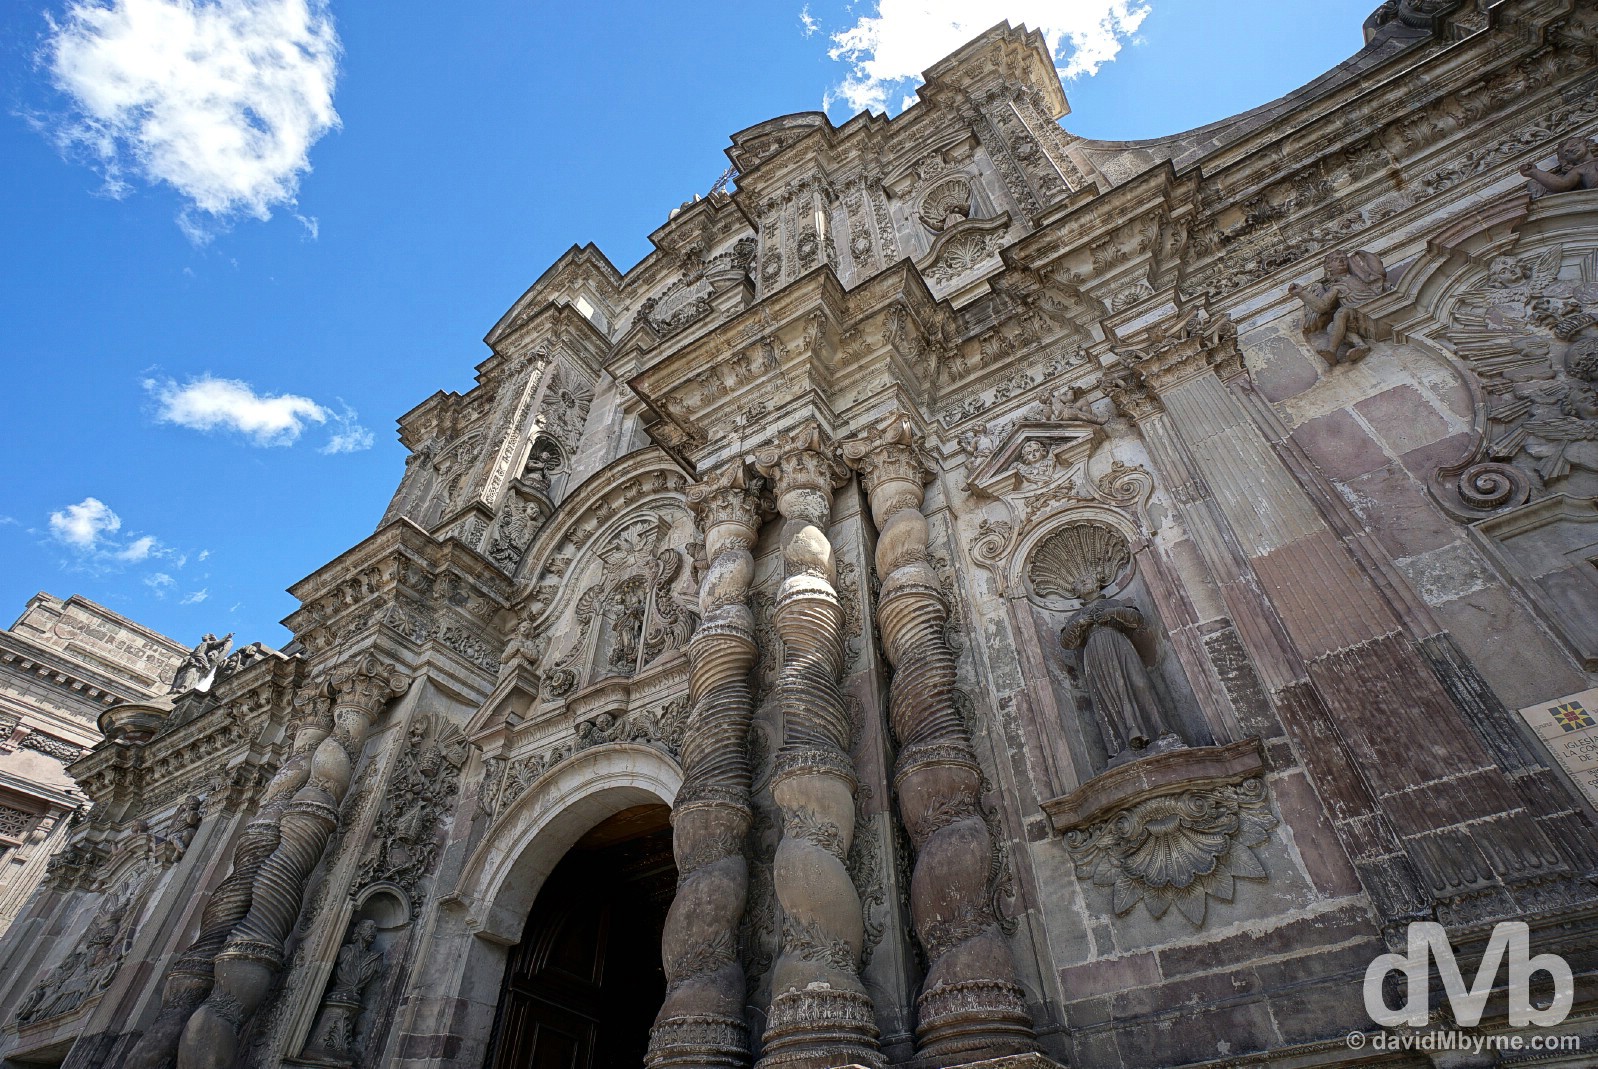 The facade of the baroque La Compania Church in Quito, Ecuador. July 4, 2015.